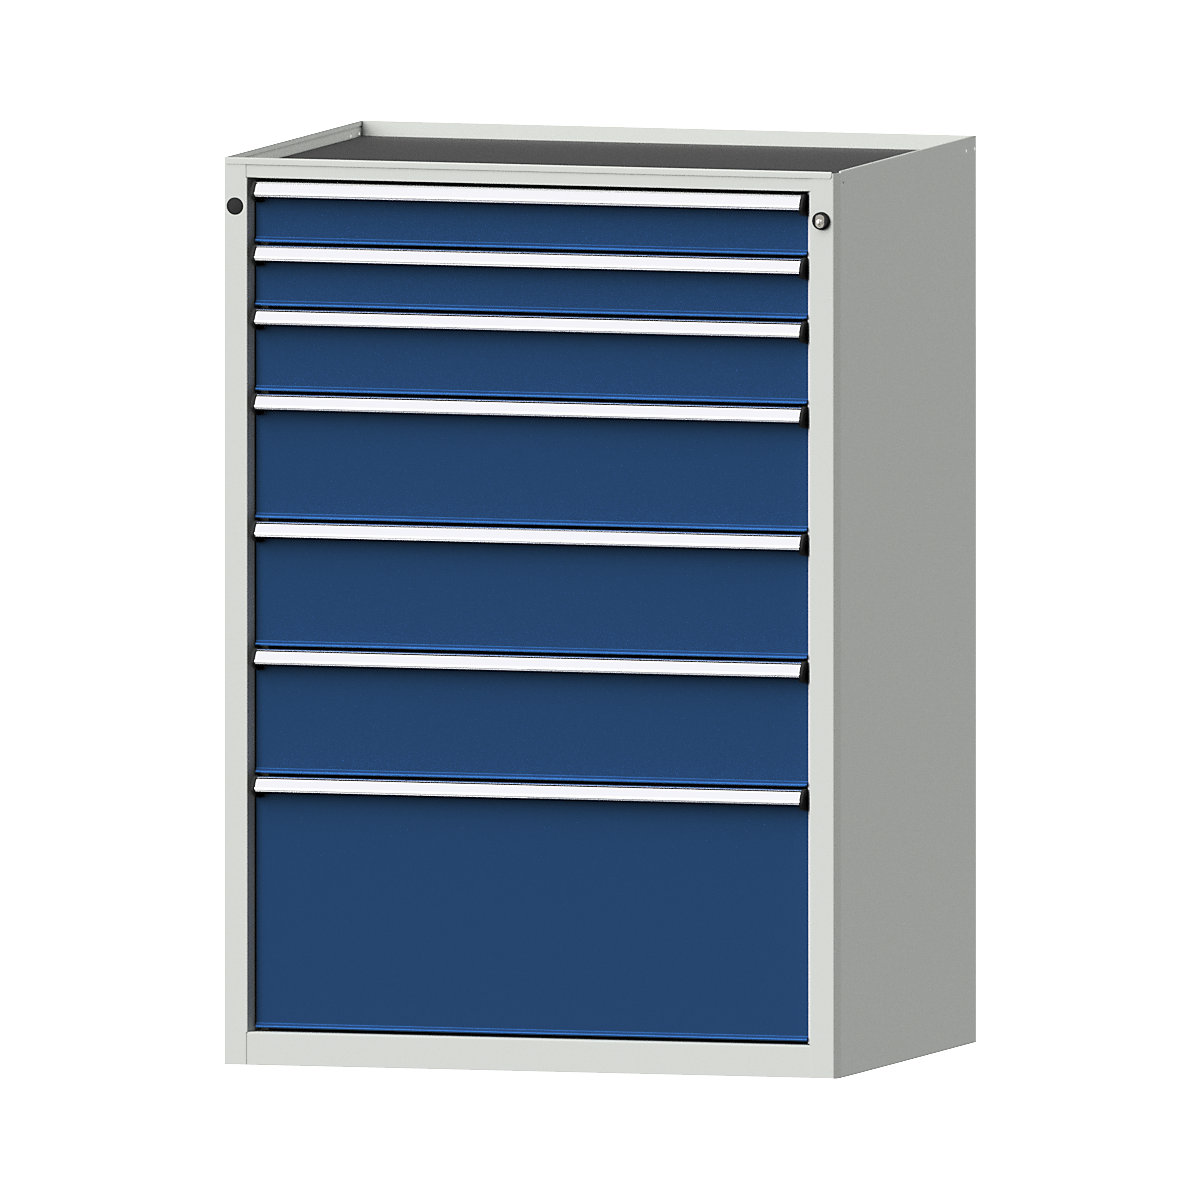 Armoire à tiroirs – ANKE, l x p 910 x 675 mm, charge max. tiroirs 200 kg, 7 tiroirs, hauteur 1280 mm, façade bleu gentiane-4